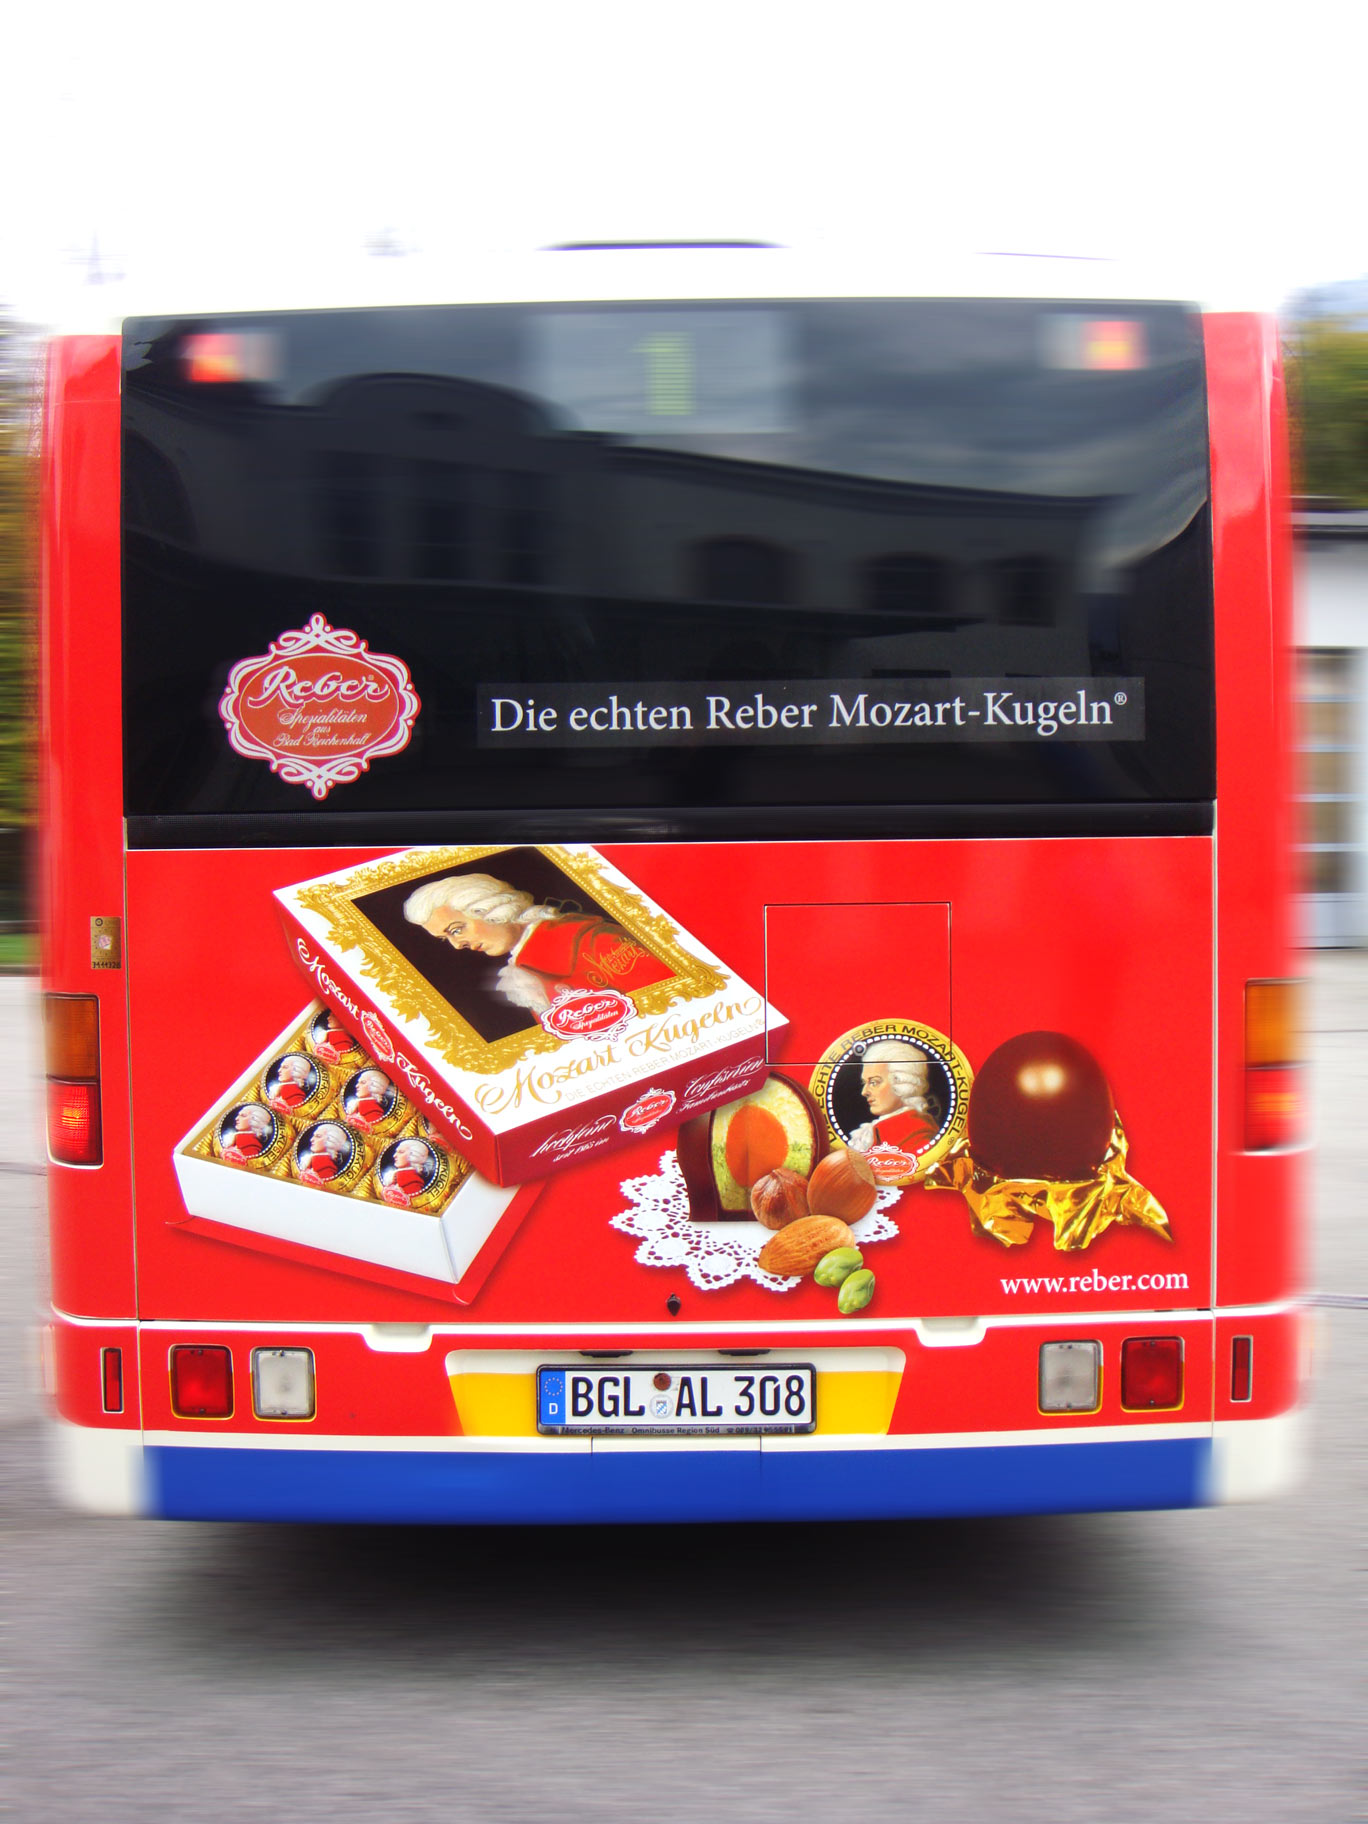 Buswerbung - Reber Mozartkugeln - Heck